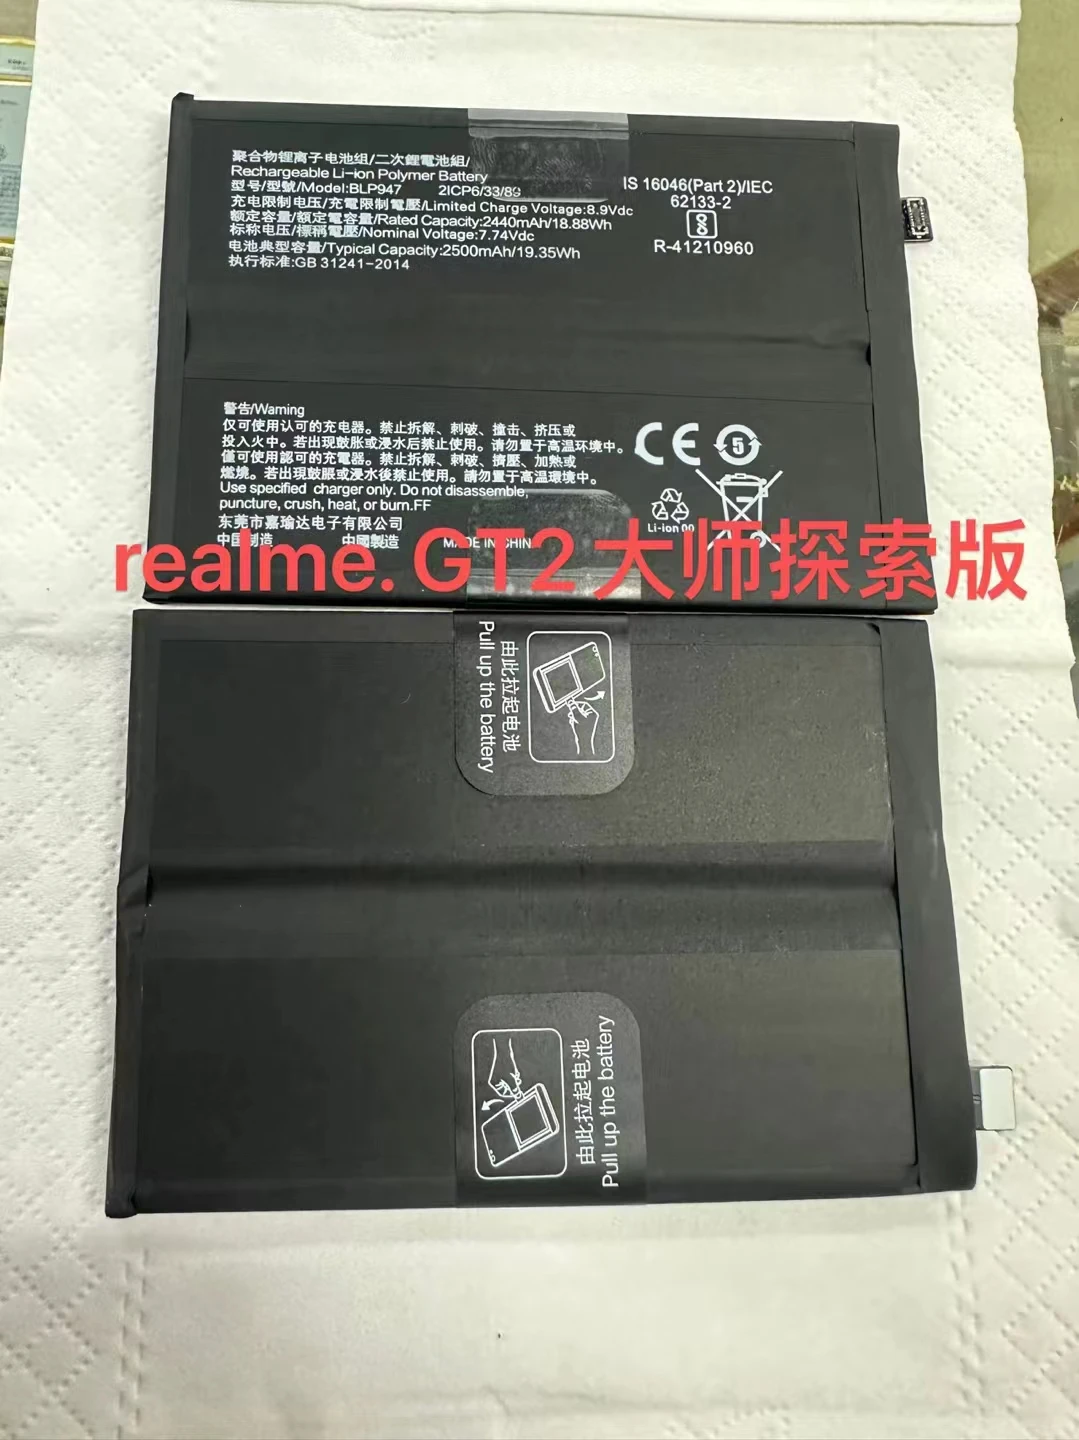 

New BLP947 5000mAh Battery For Oppo Realme GT2 GT 2 Mobile Phone Batteries